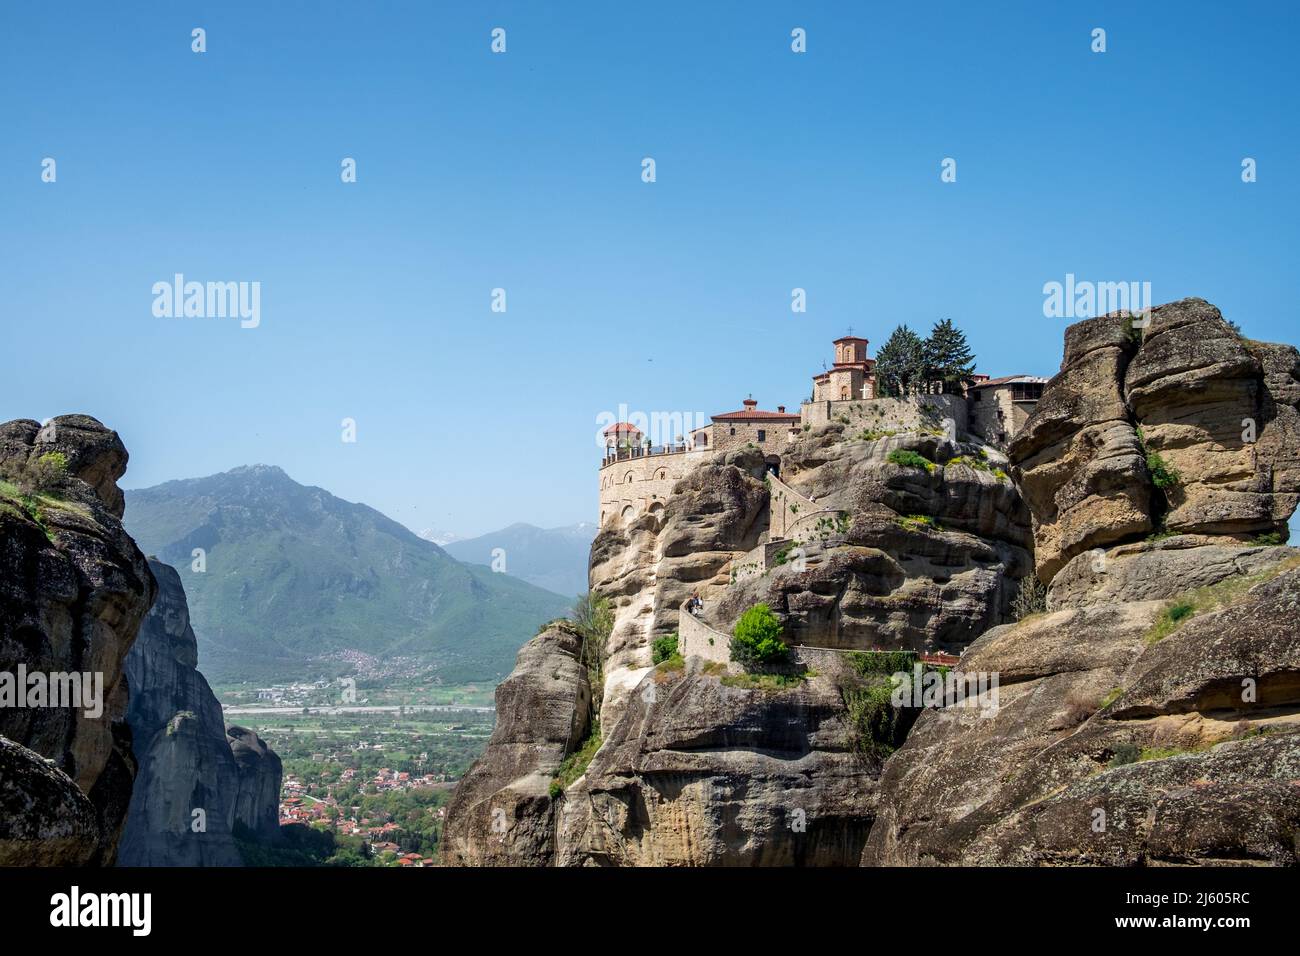 Paesaggio dei monasteri greco-ortodossi sulla cima di rocce ripide Foto Stock